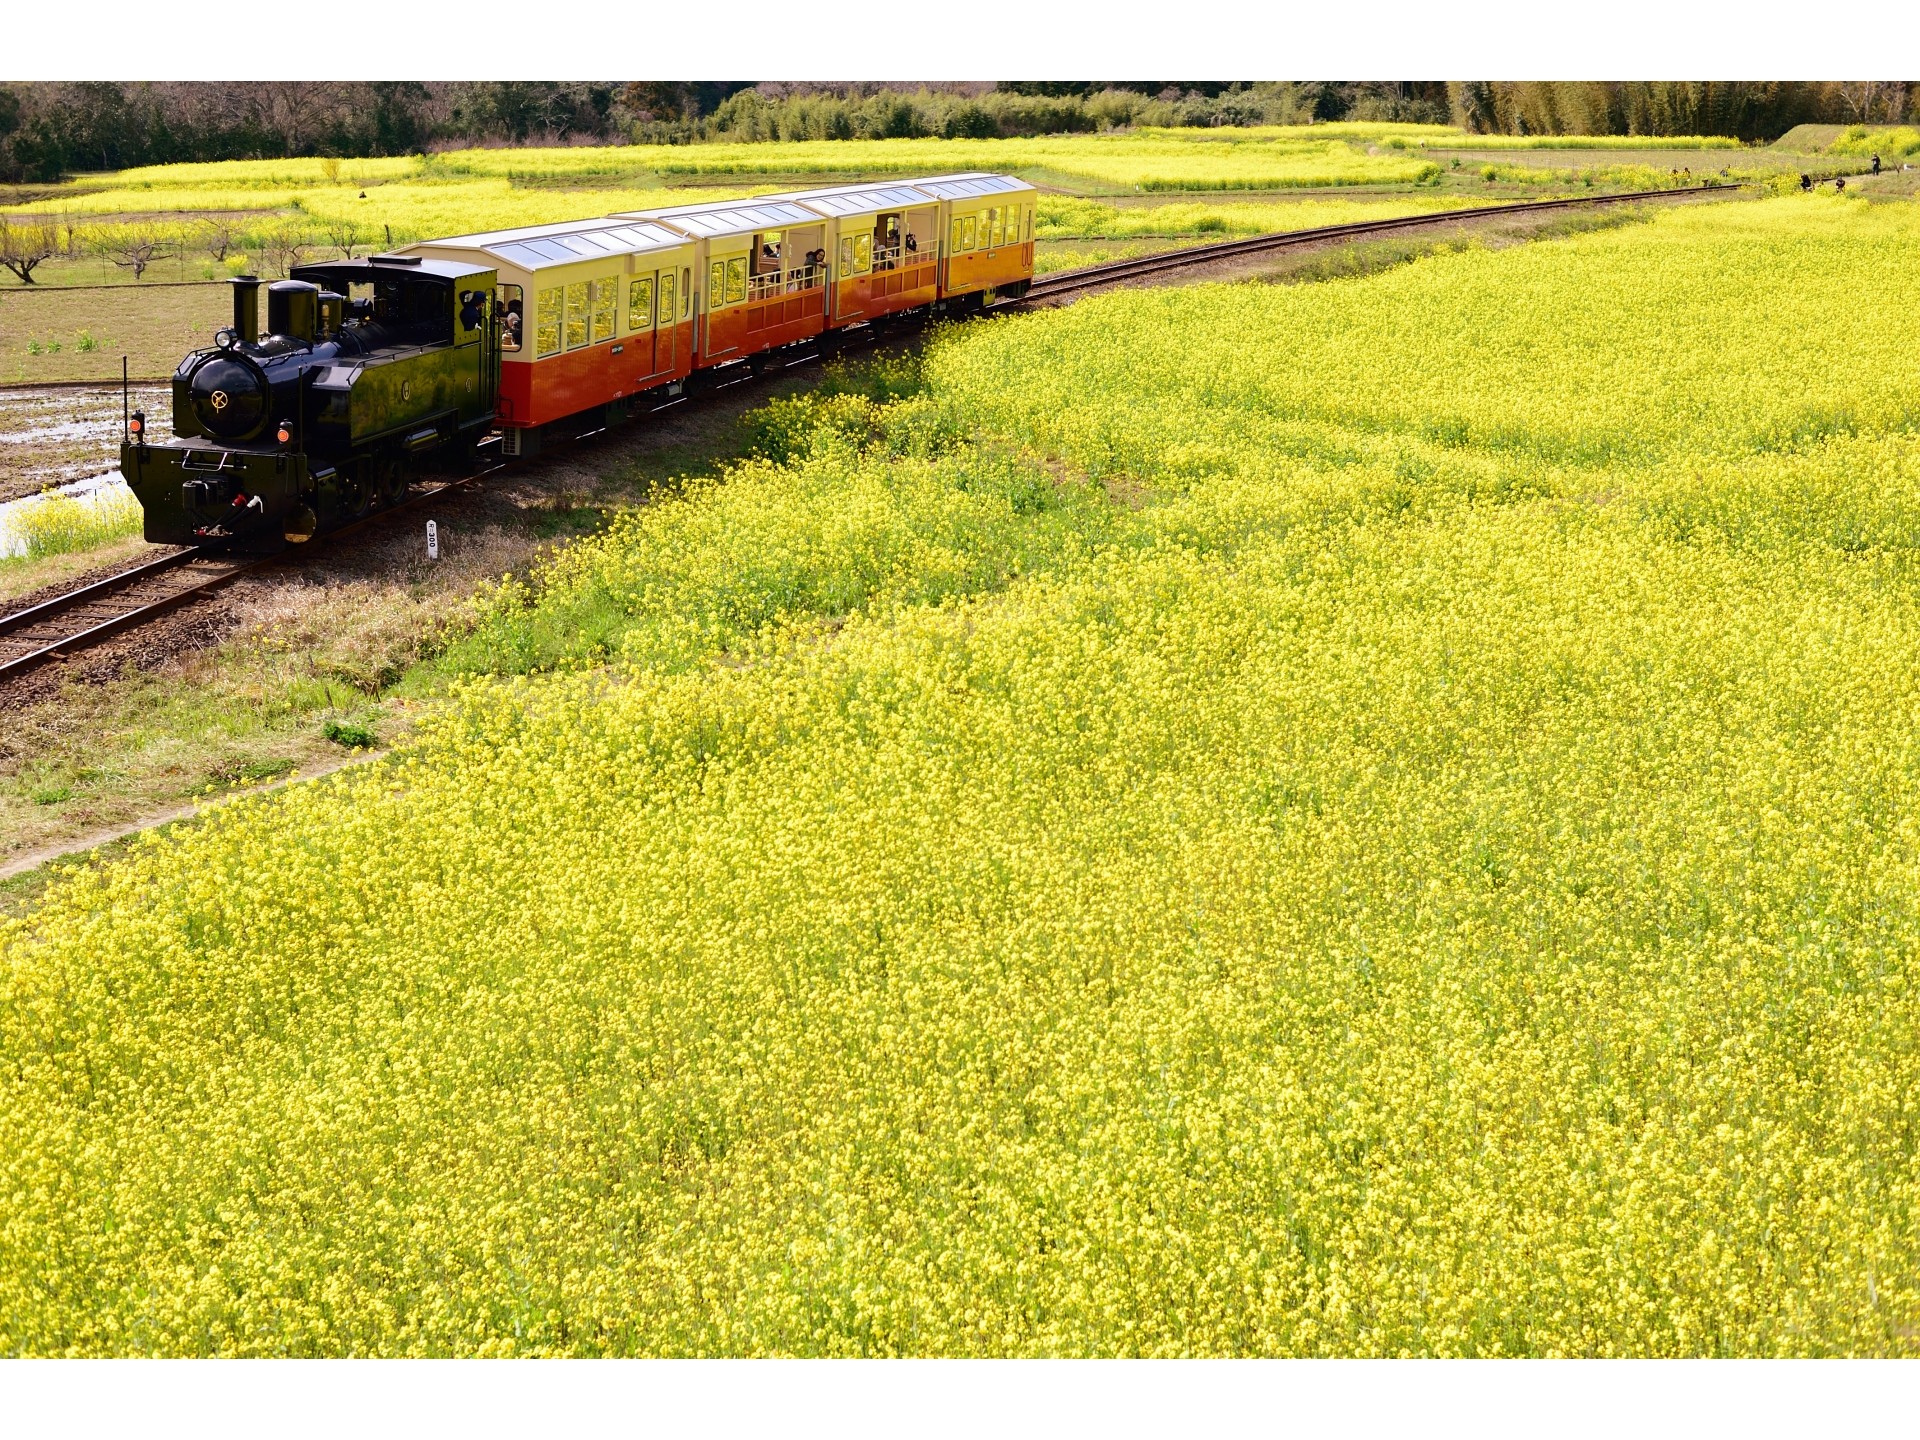 【小湊鉄道 里山トロッコ列車】四季を肌で感じることができます。